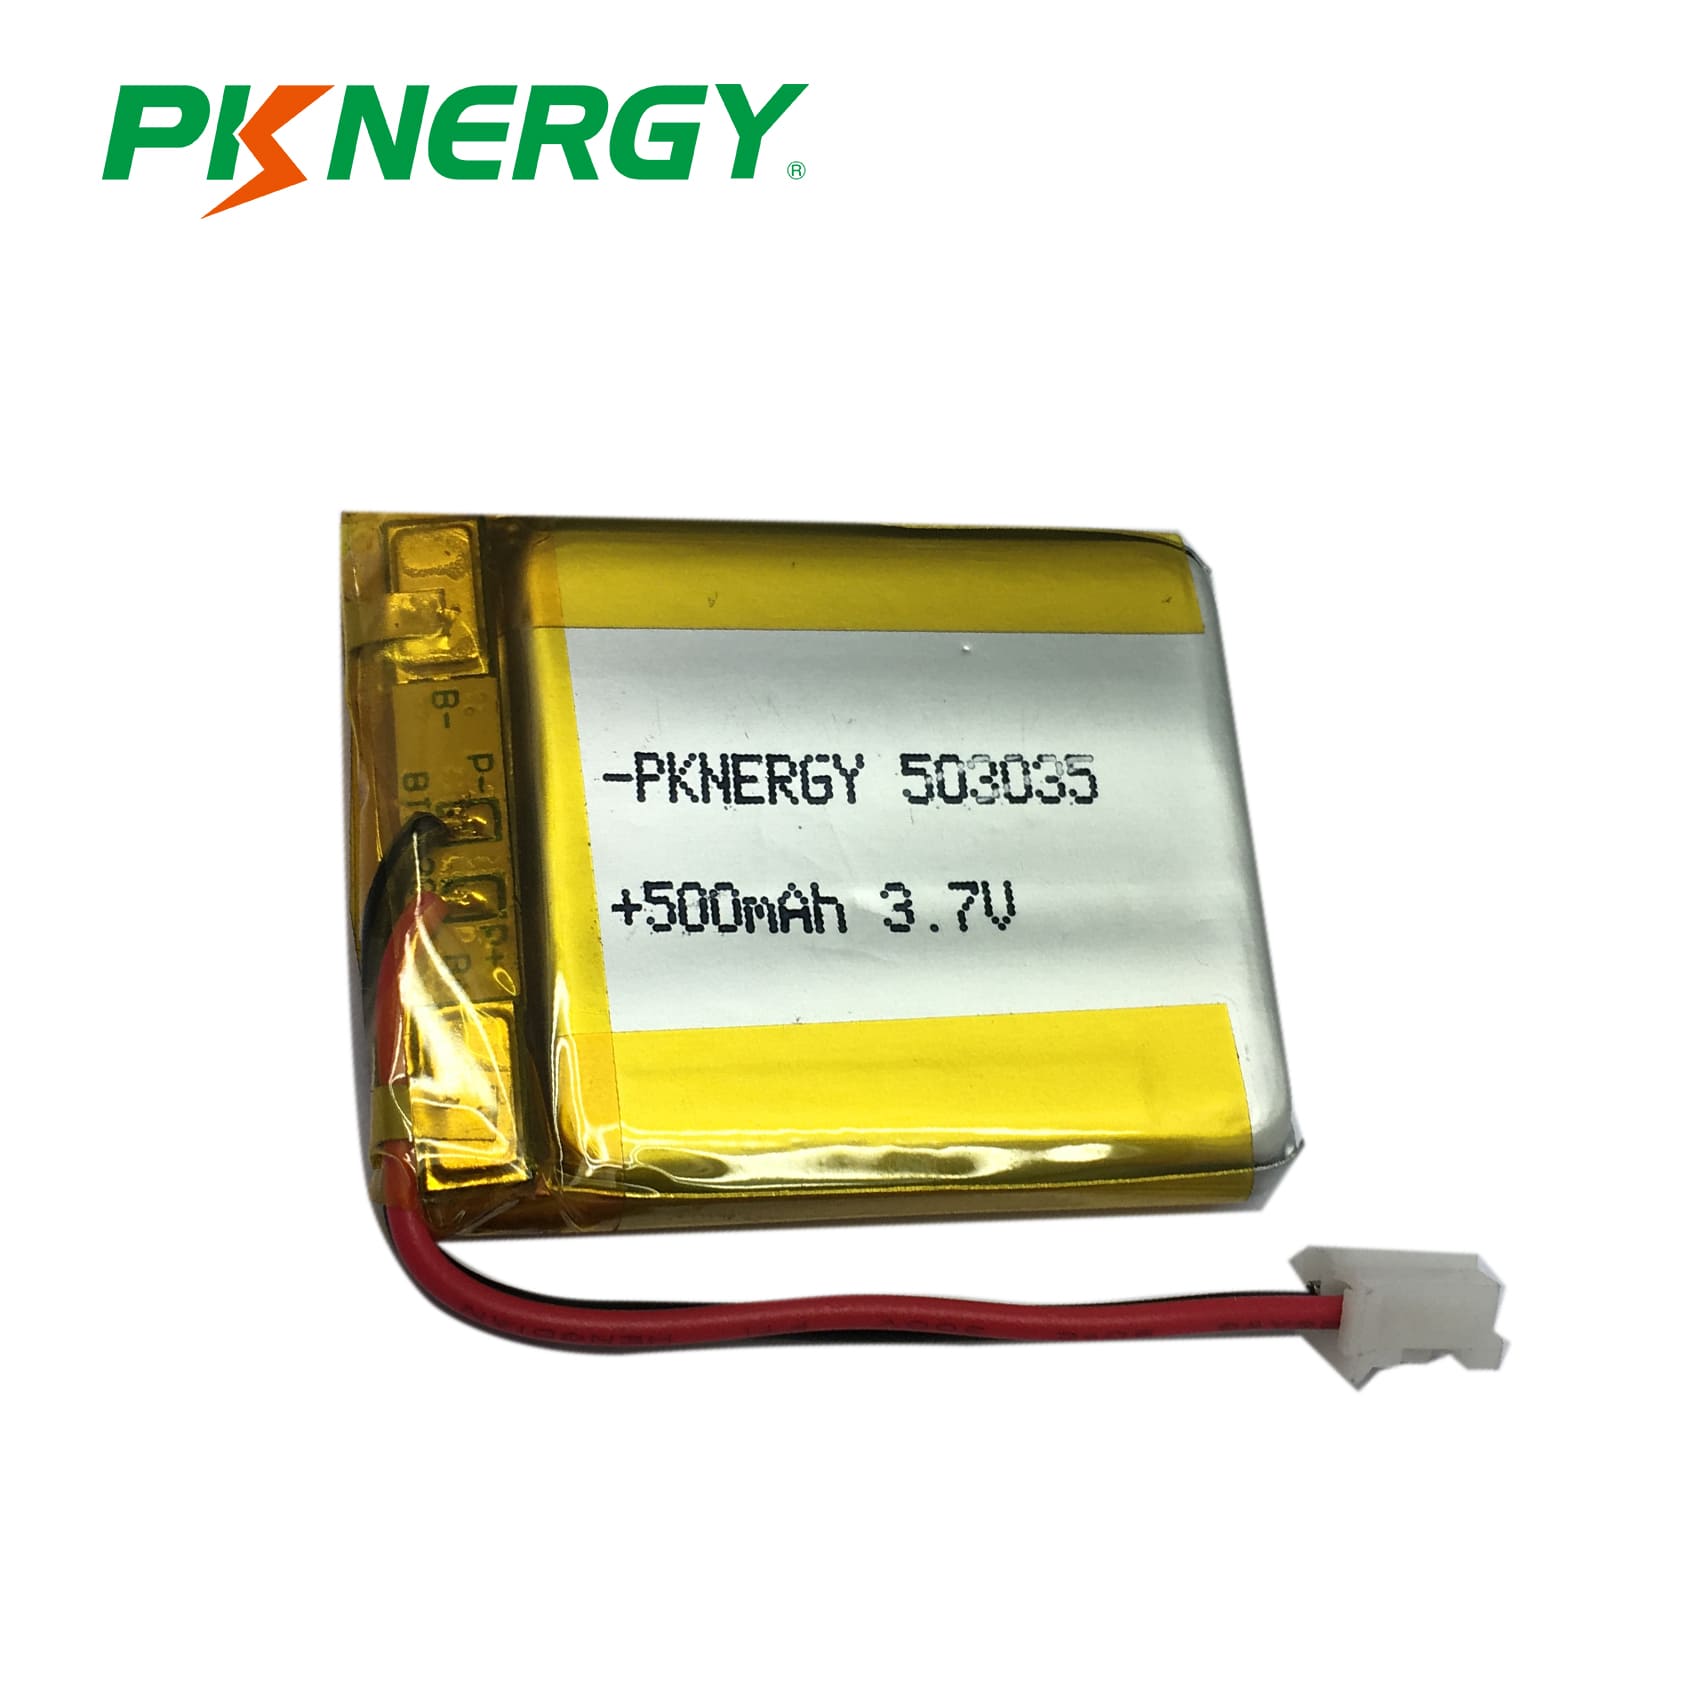 Battery Lipo 3.7v Manufacturer, PKNERGY